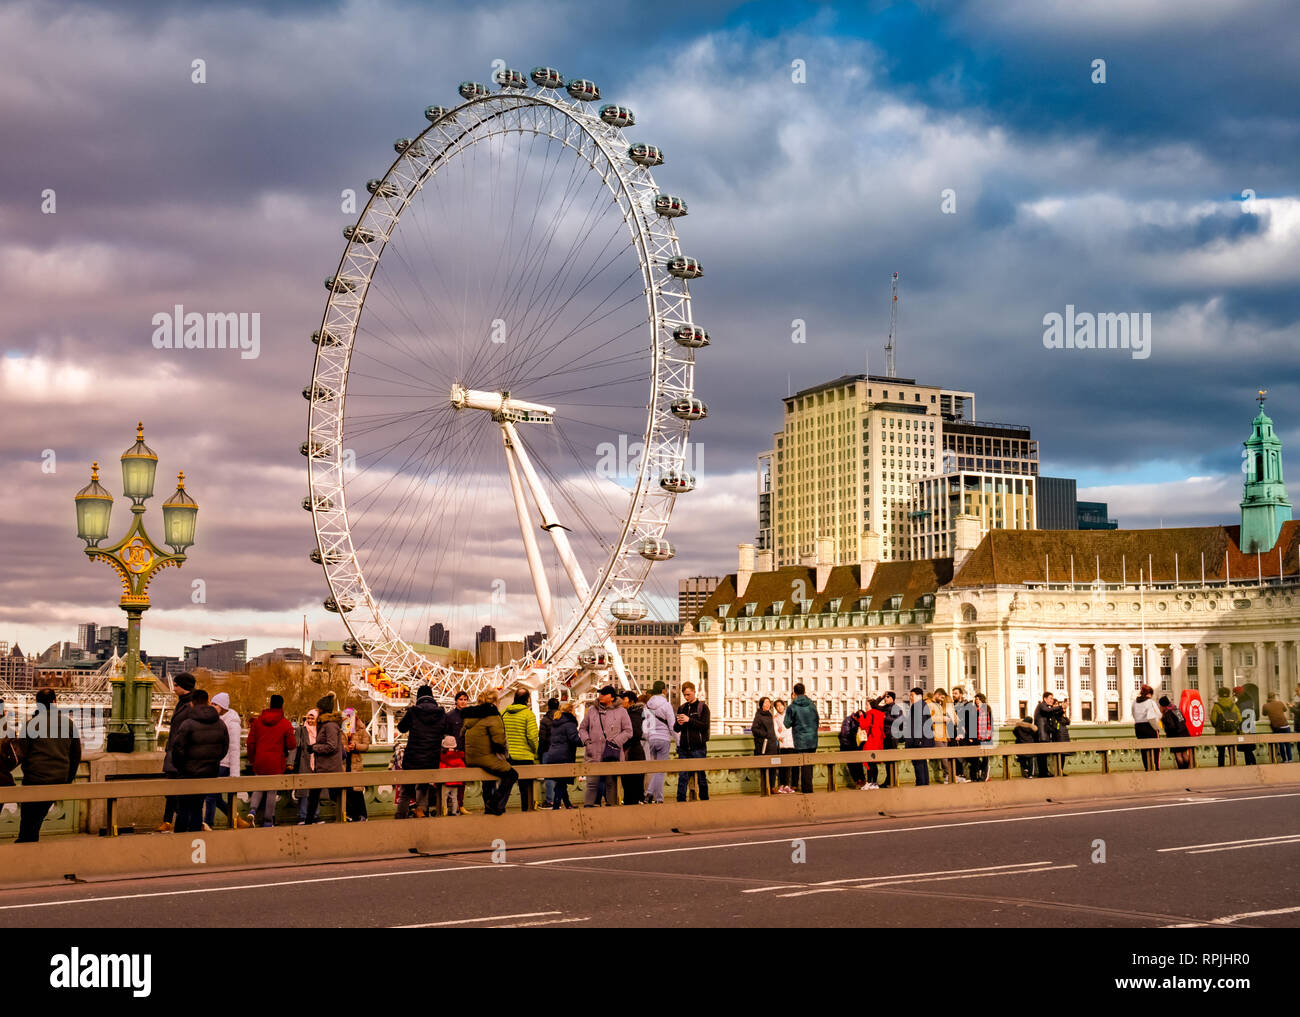 Londres, Royaume-Uni - 10 janvier 2019 : les touristes visitant Londres en face de la célèbre Eye whell, entre la rivière Thames, éclairé par la lumière au coucher du soleil Banque D'Images